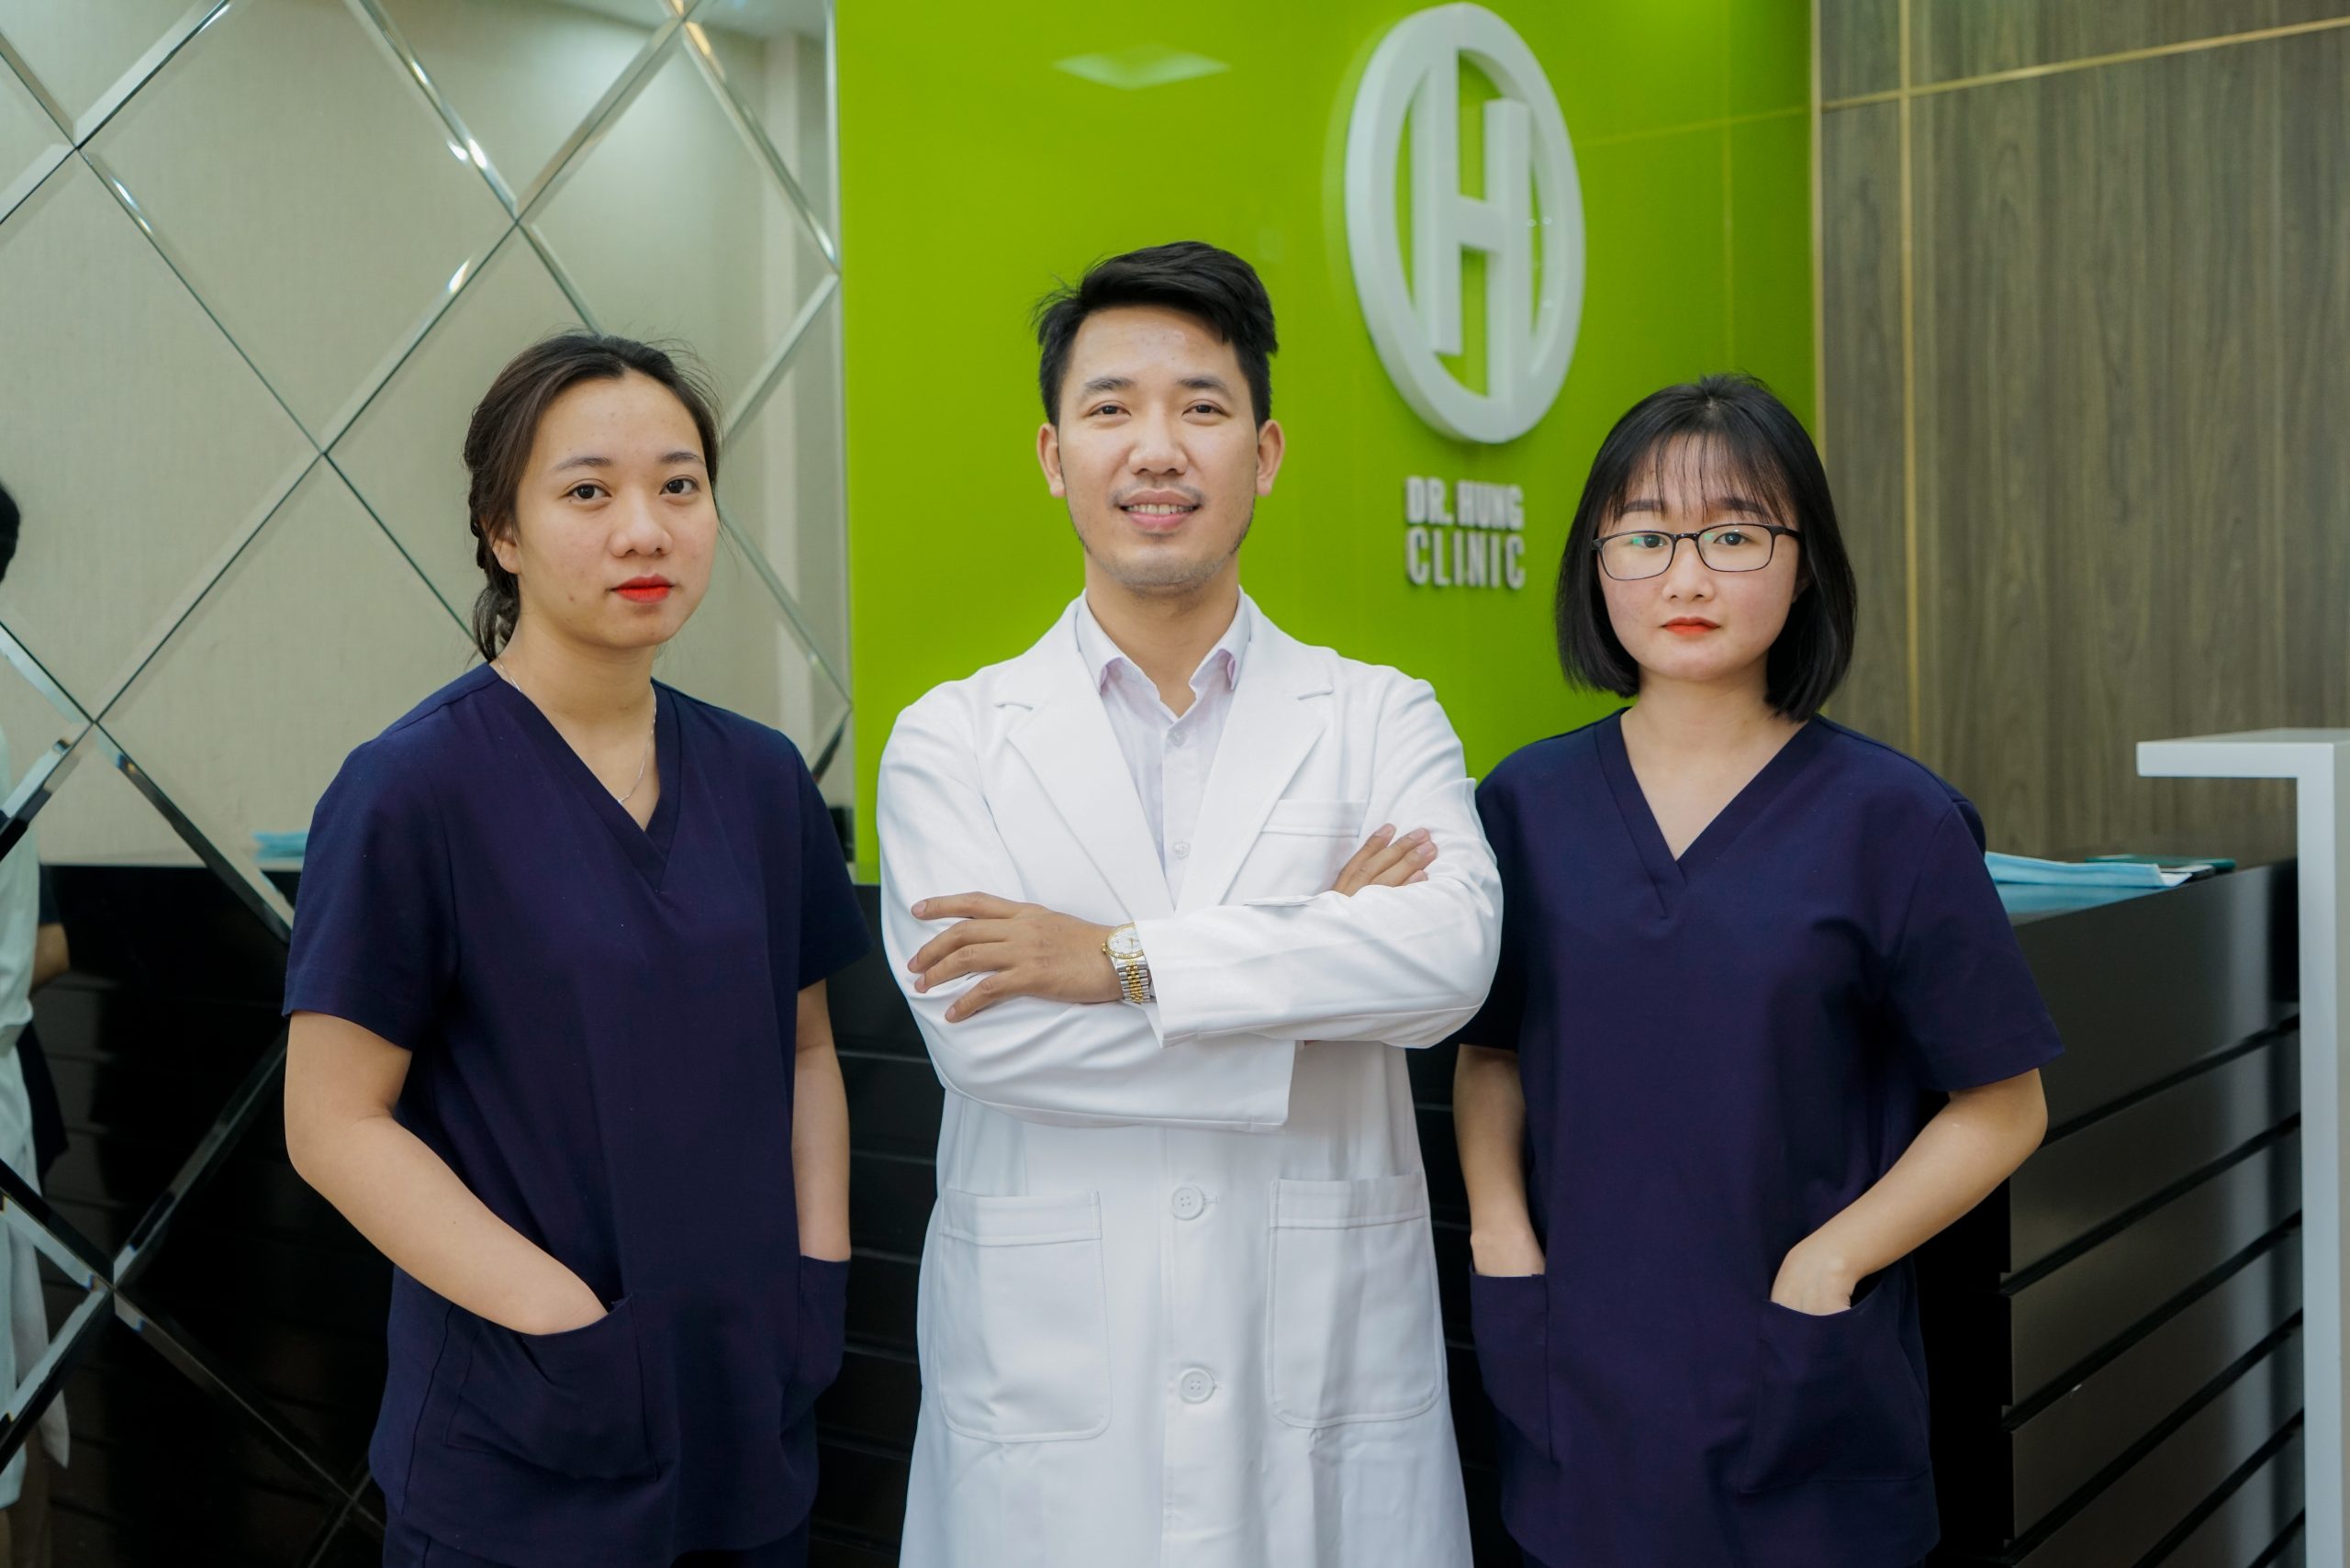 Dr Hùng Clinic: Địa chỉ kéo dài dương vật uy tín và chất lượng tại Hà Nội